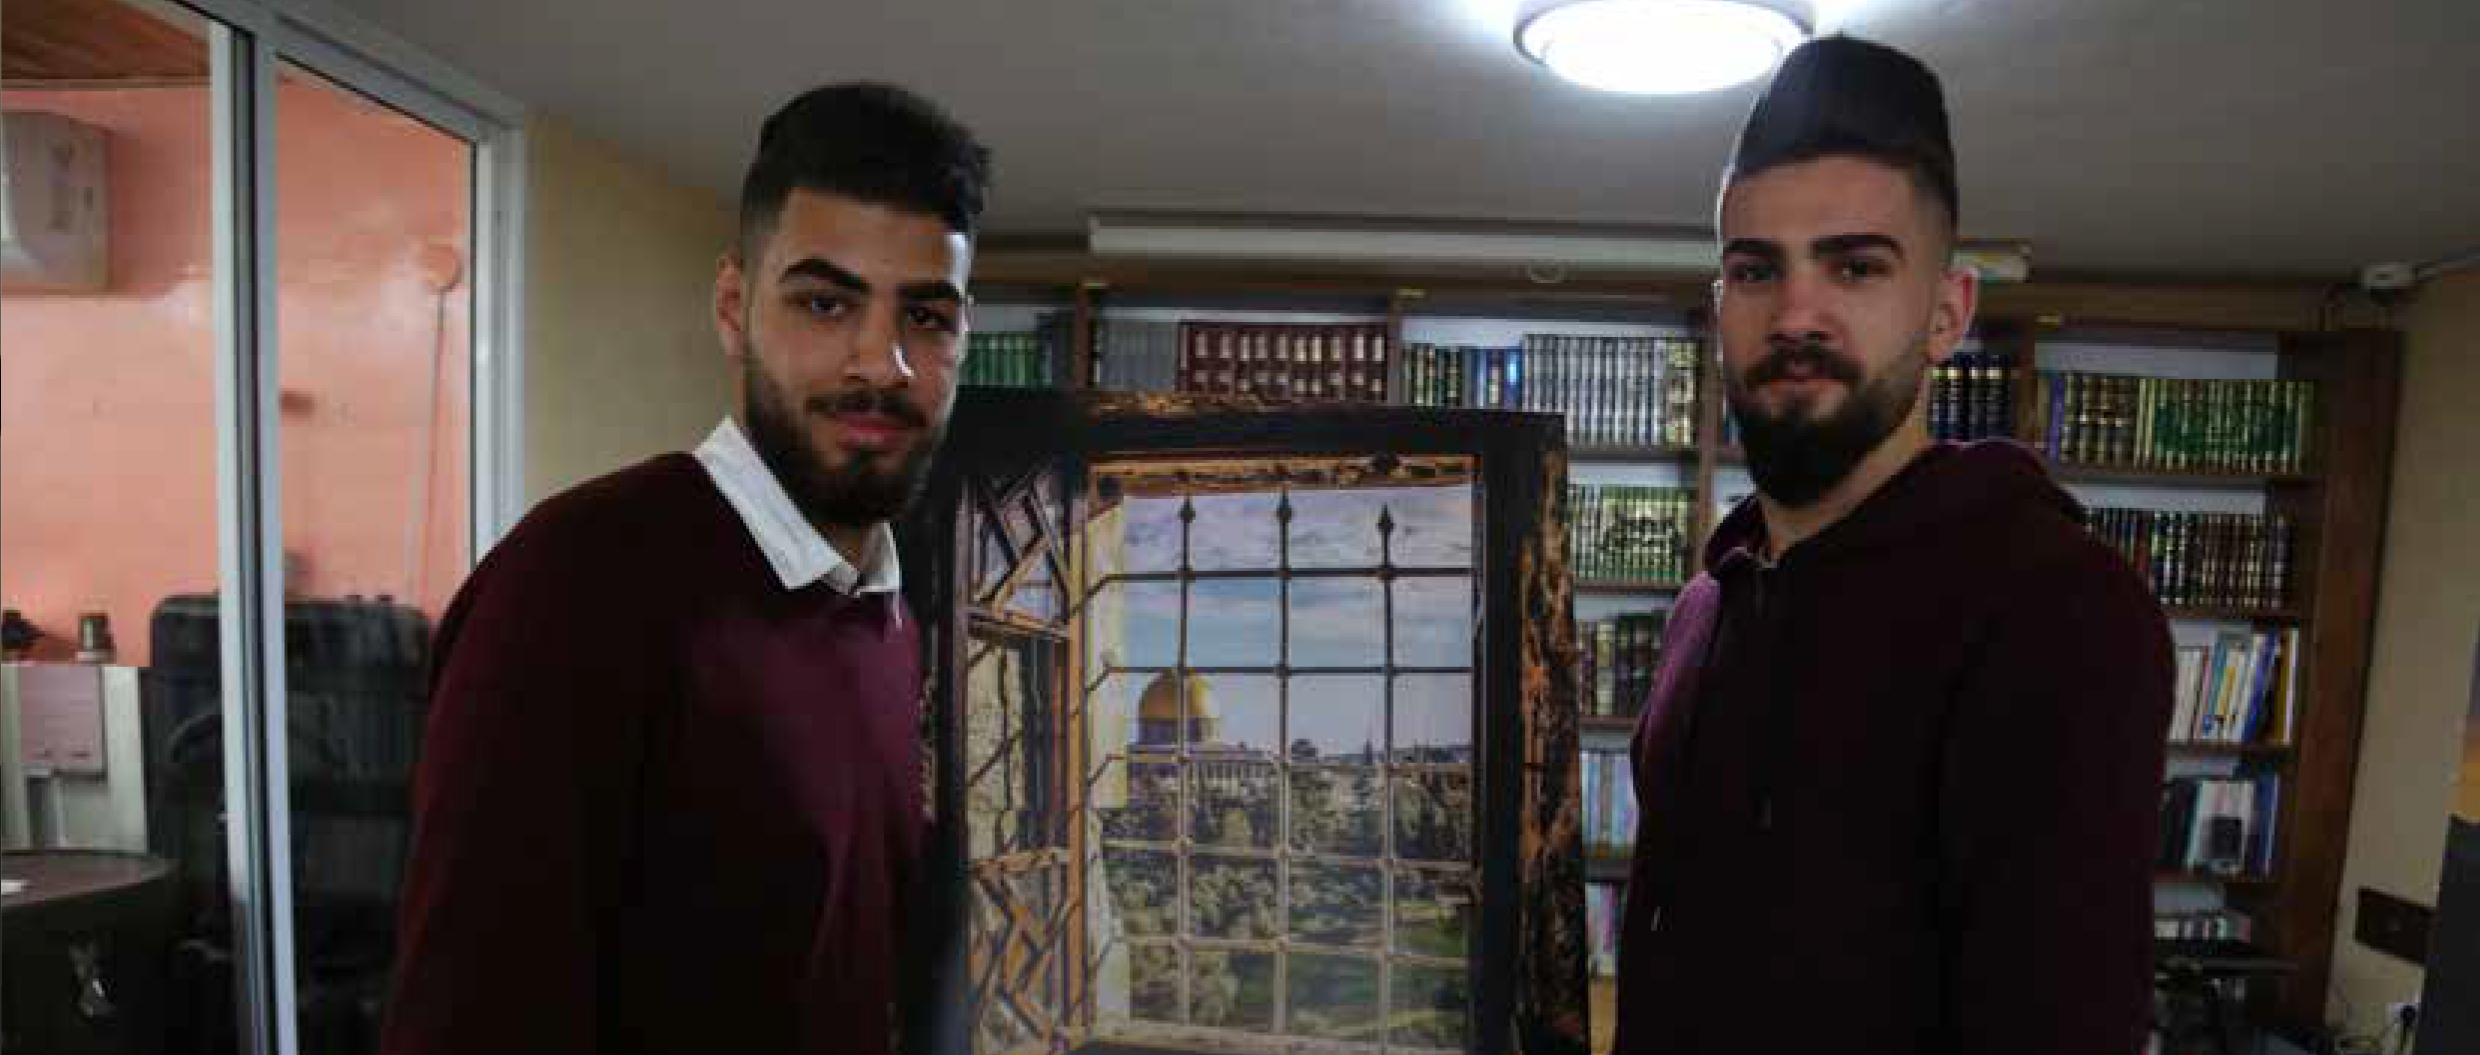 برج اللقلق تفتتح معرضا فنيا للمصور المقدسي خالد سالم